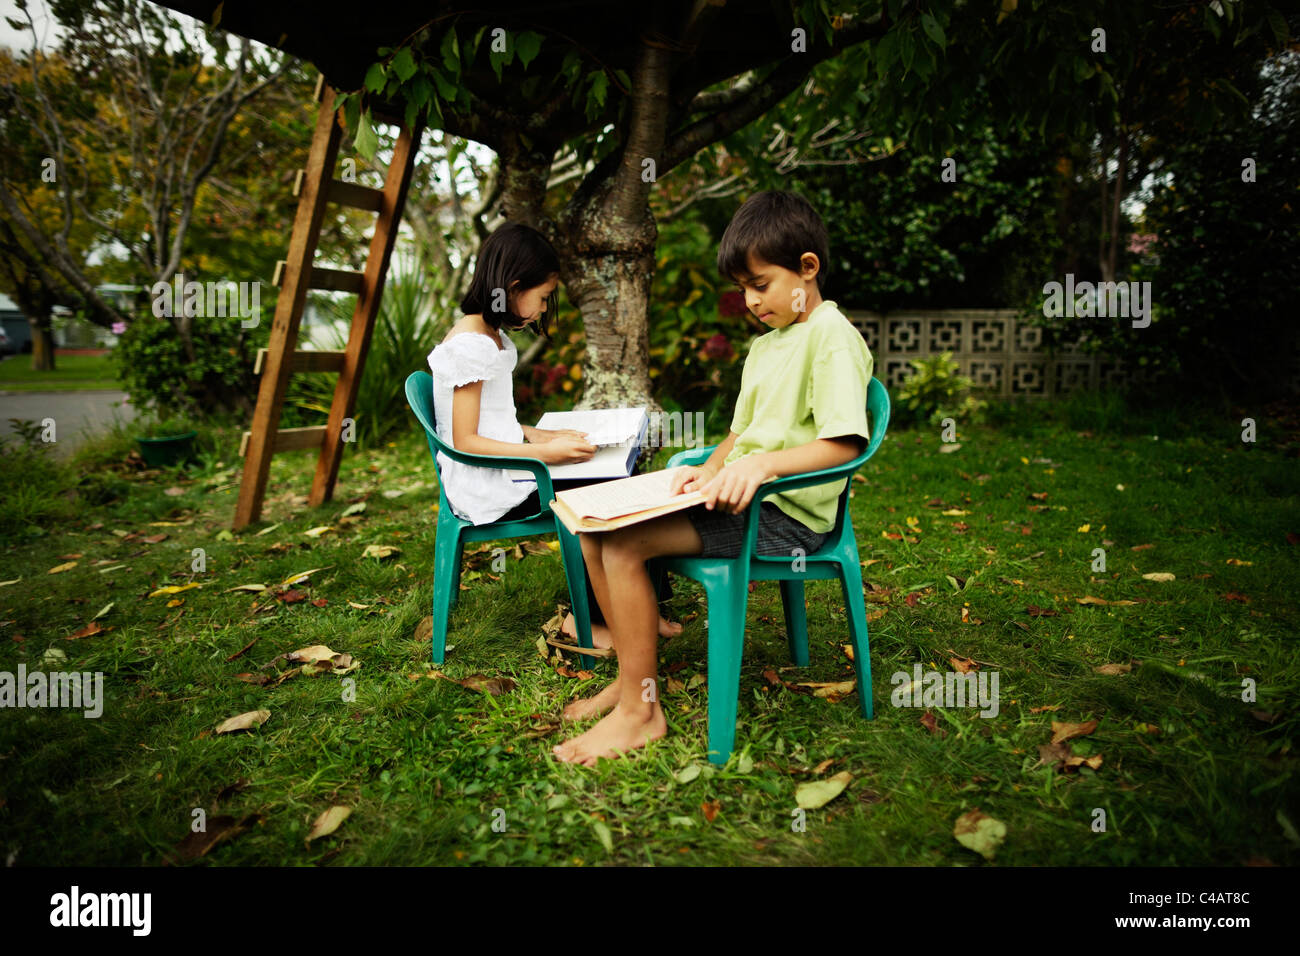 Chico y chica sentarse en sillas de plástico la lectura de libros en el jardín debajo del árbol. Foto de stock